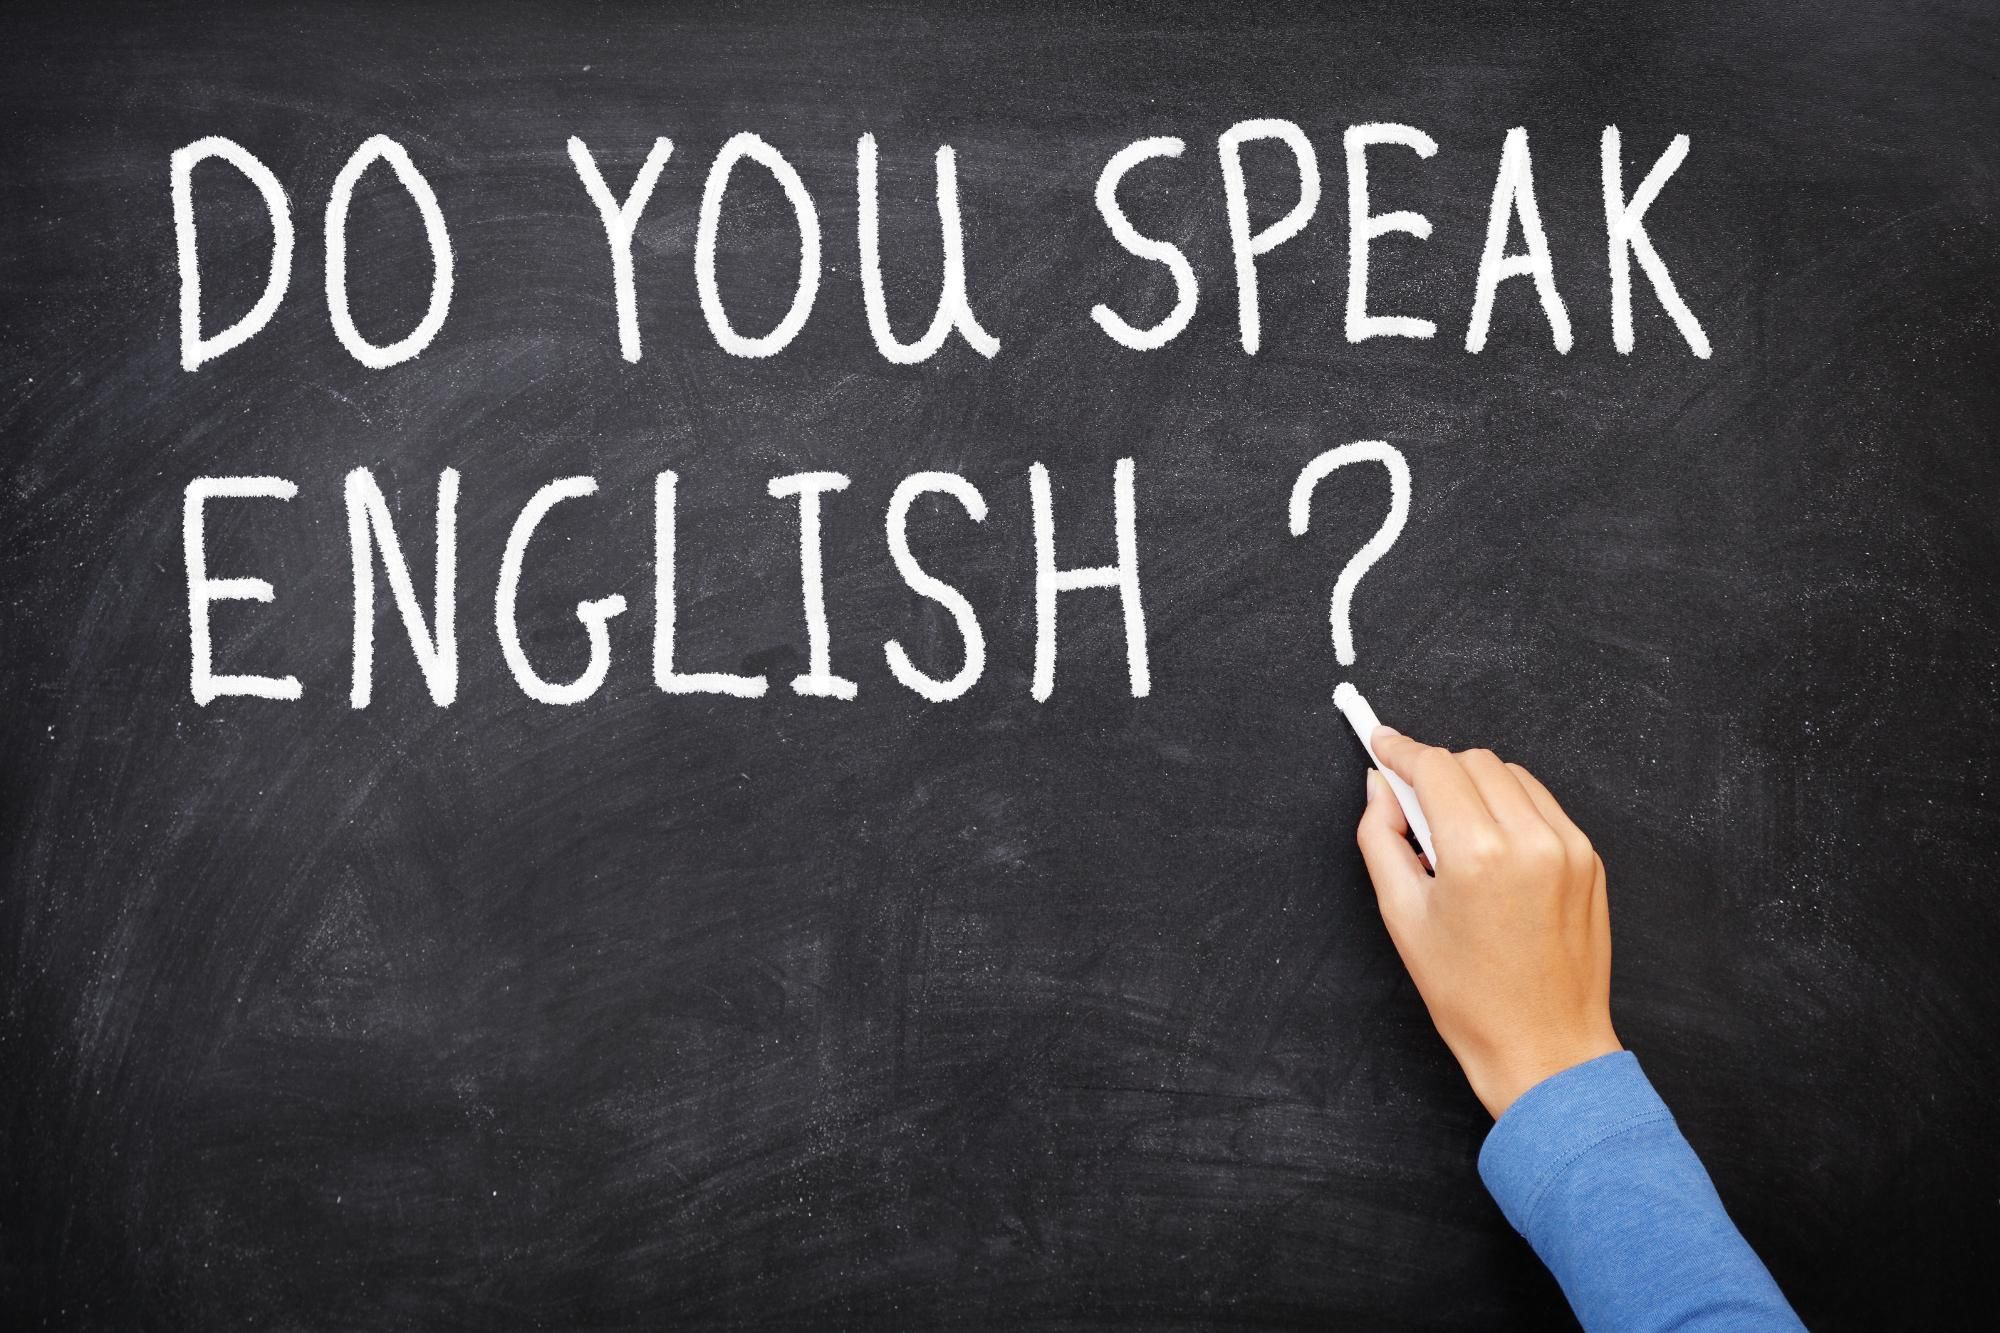 Здібностей до мов не існує: поліглот поділився цінними порадами, як вивчити іноземну